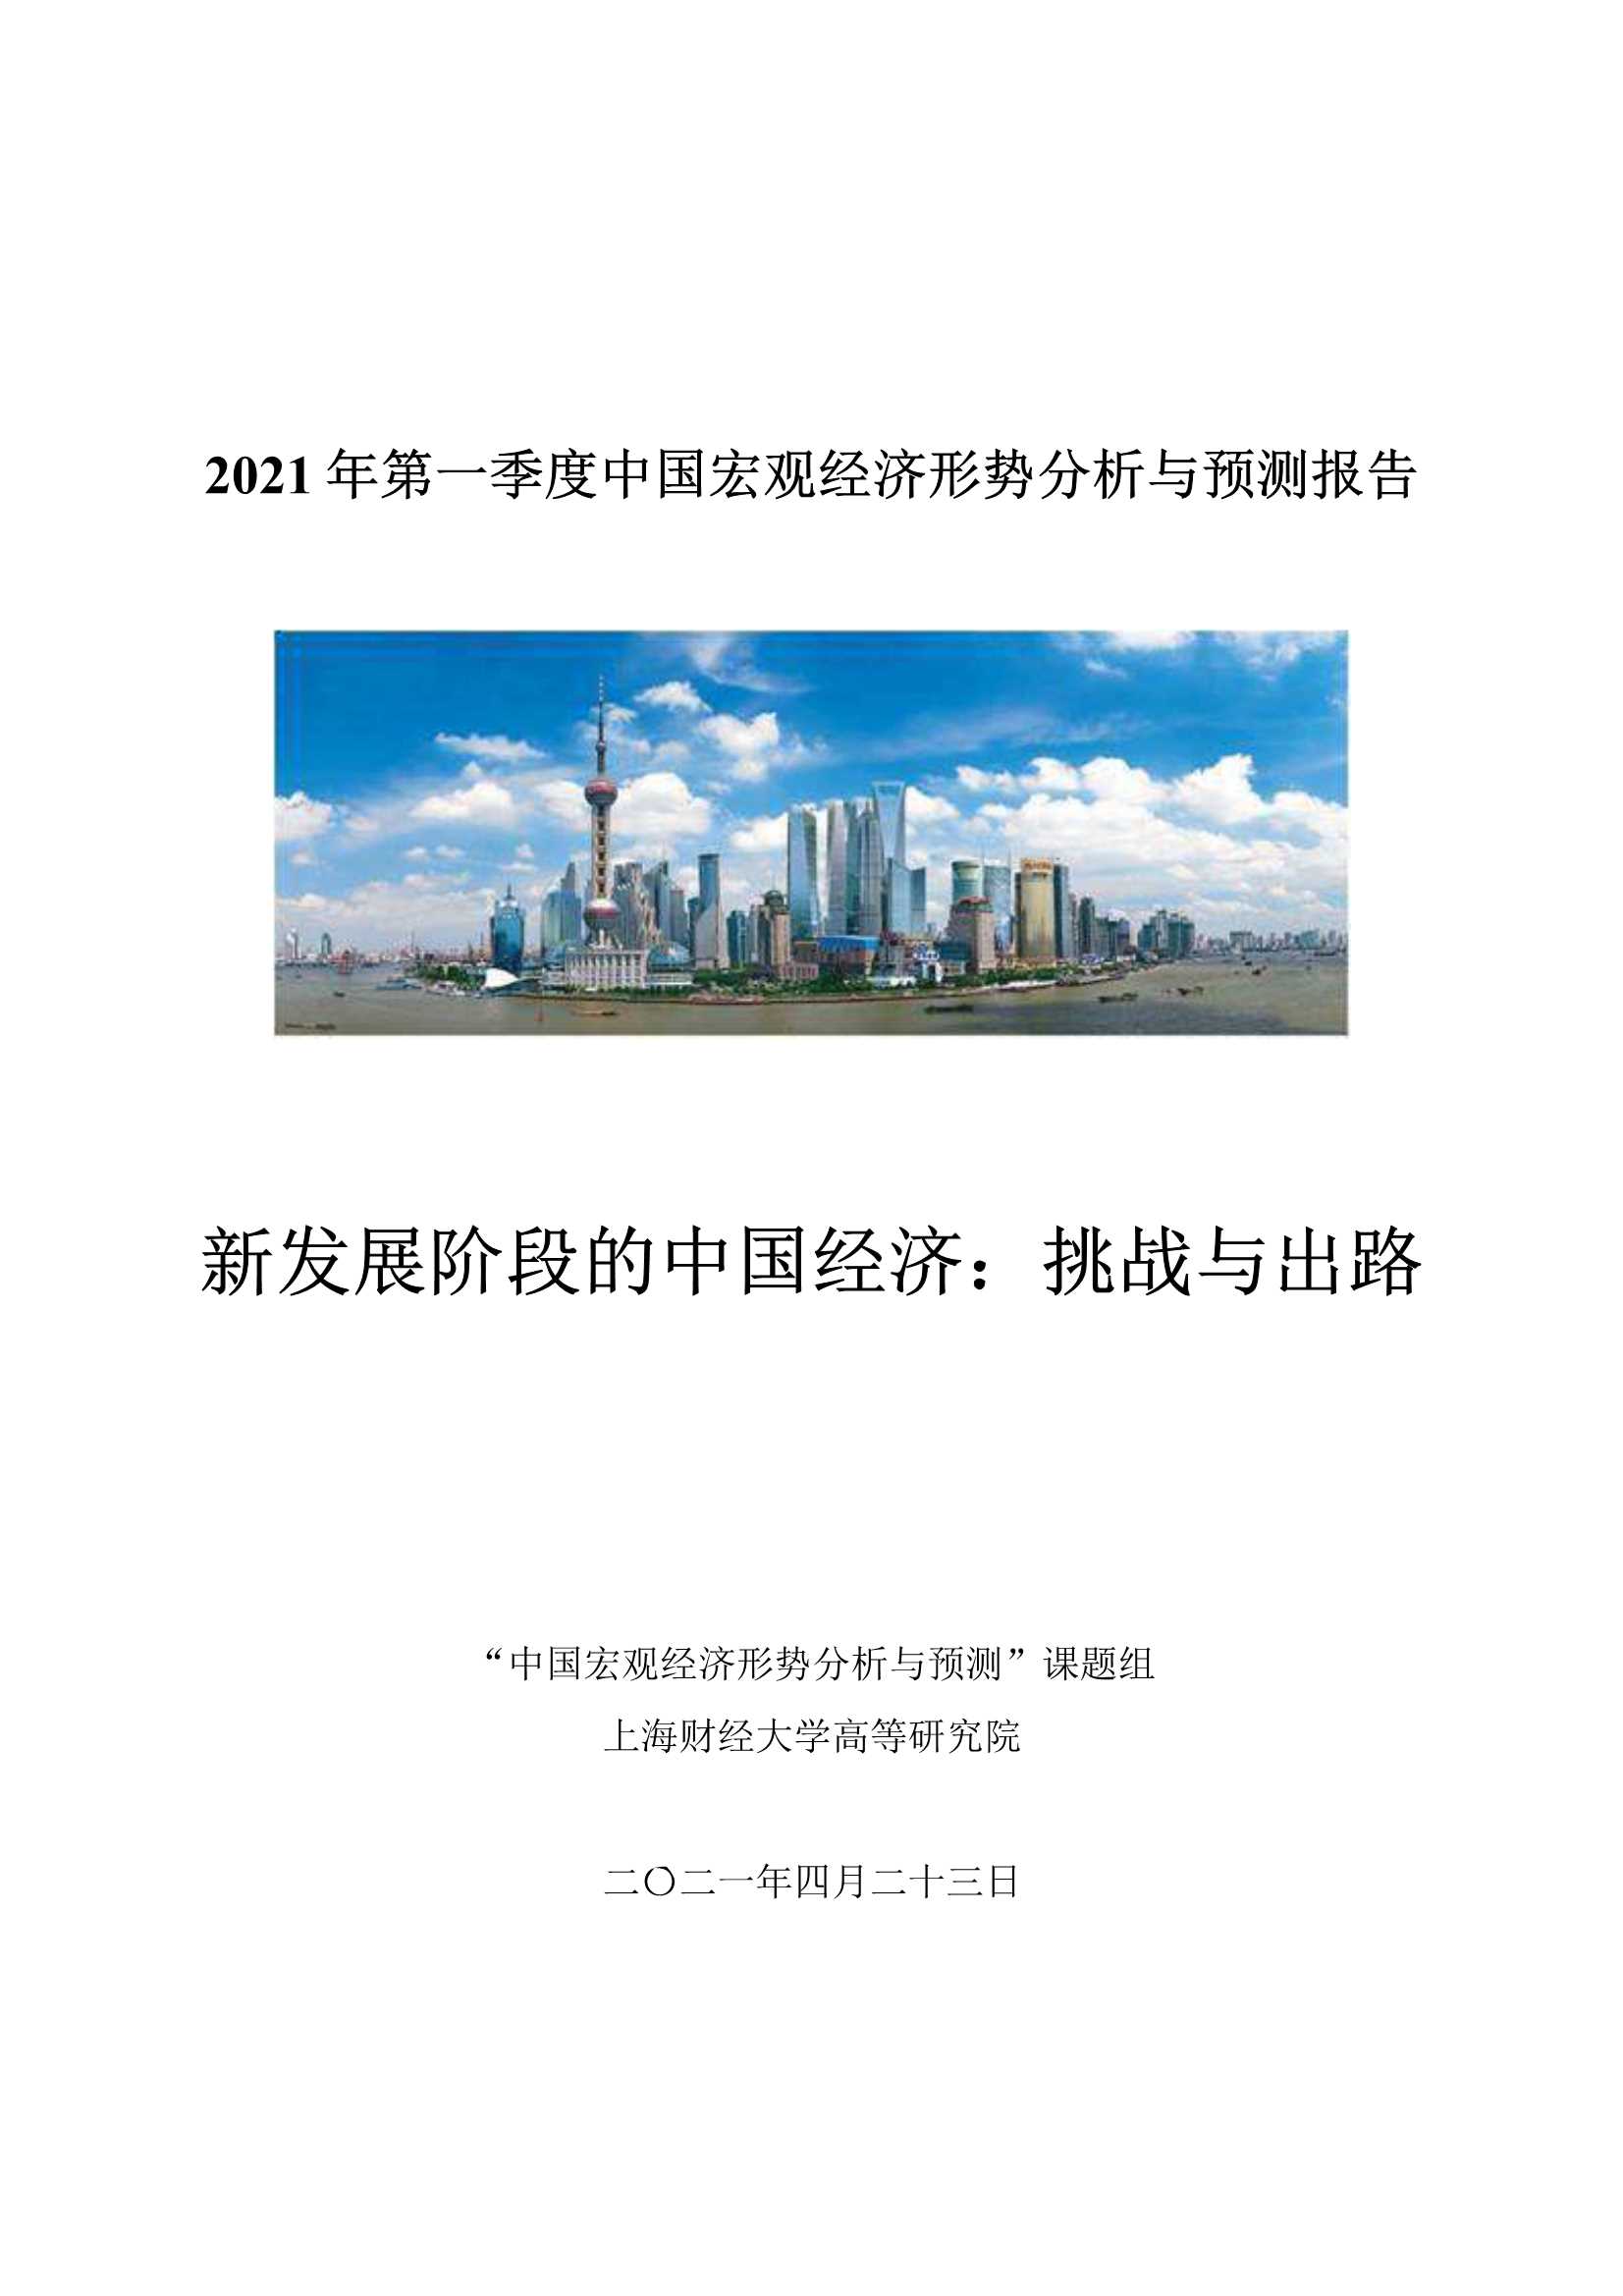 上海财经大学-2021Q1中国宏观经济形势分析与预测报告-2021.04-29页